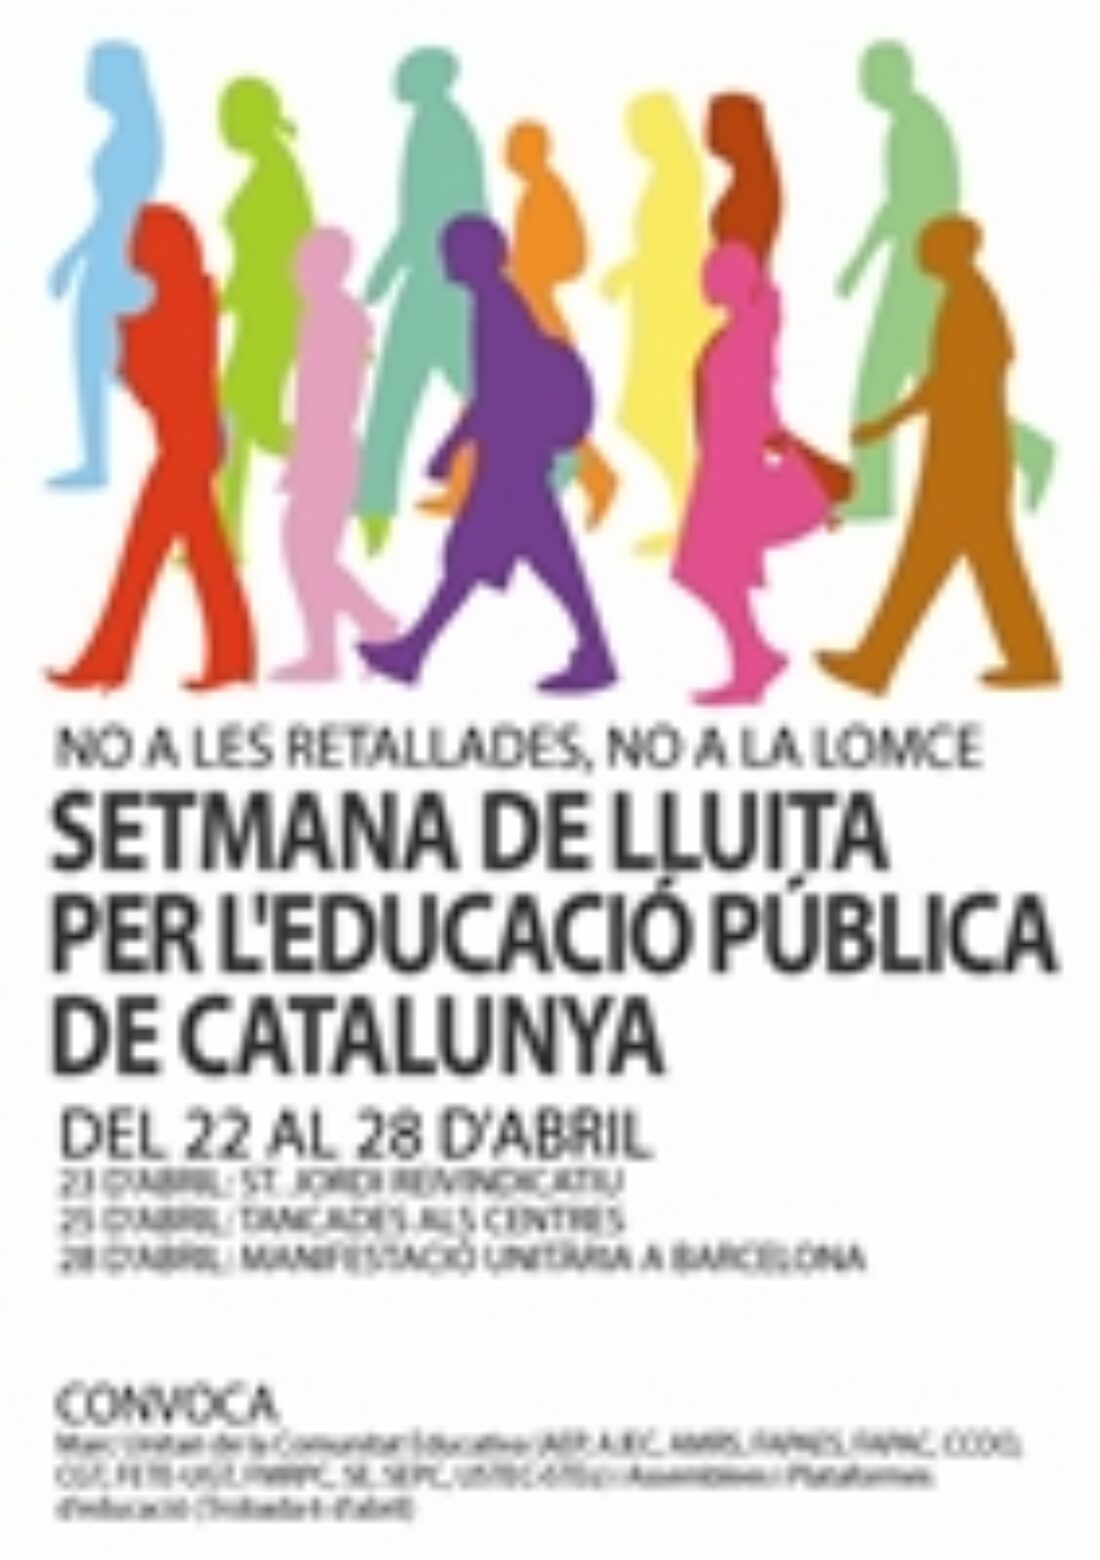 Semana de lucha por la Educación Pública de Cataluña, del 22 al 28 de abril